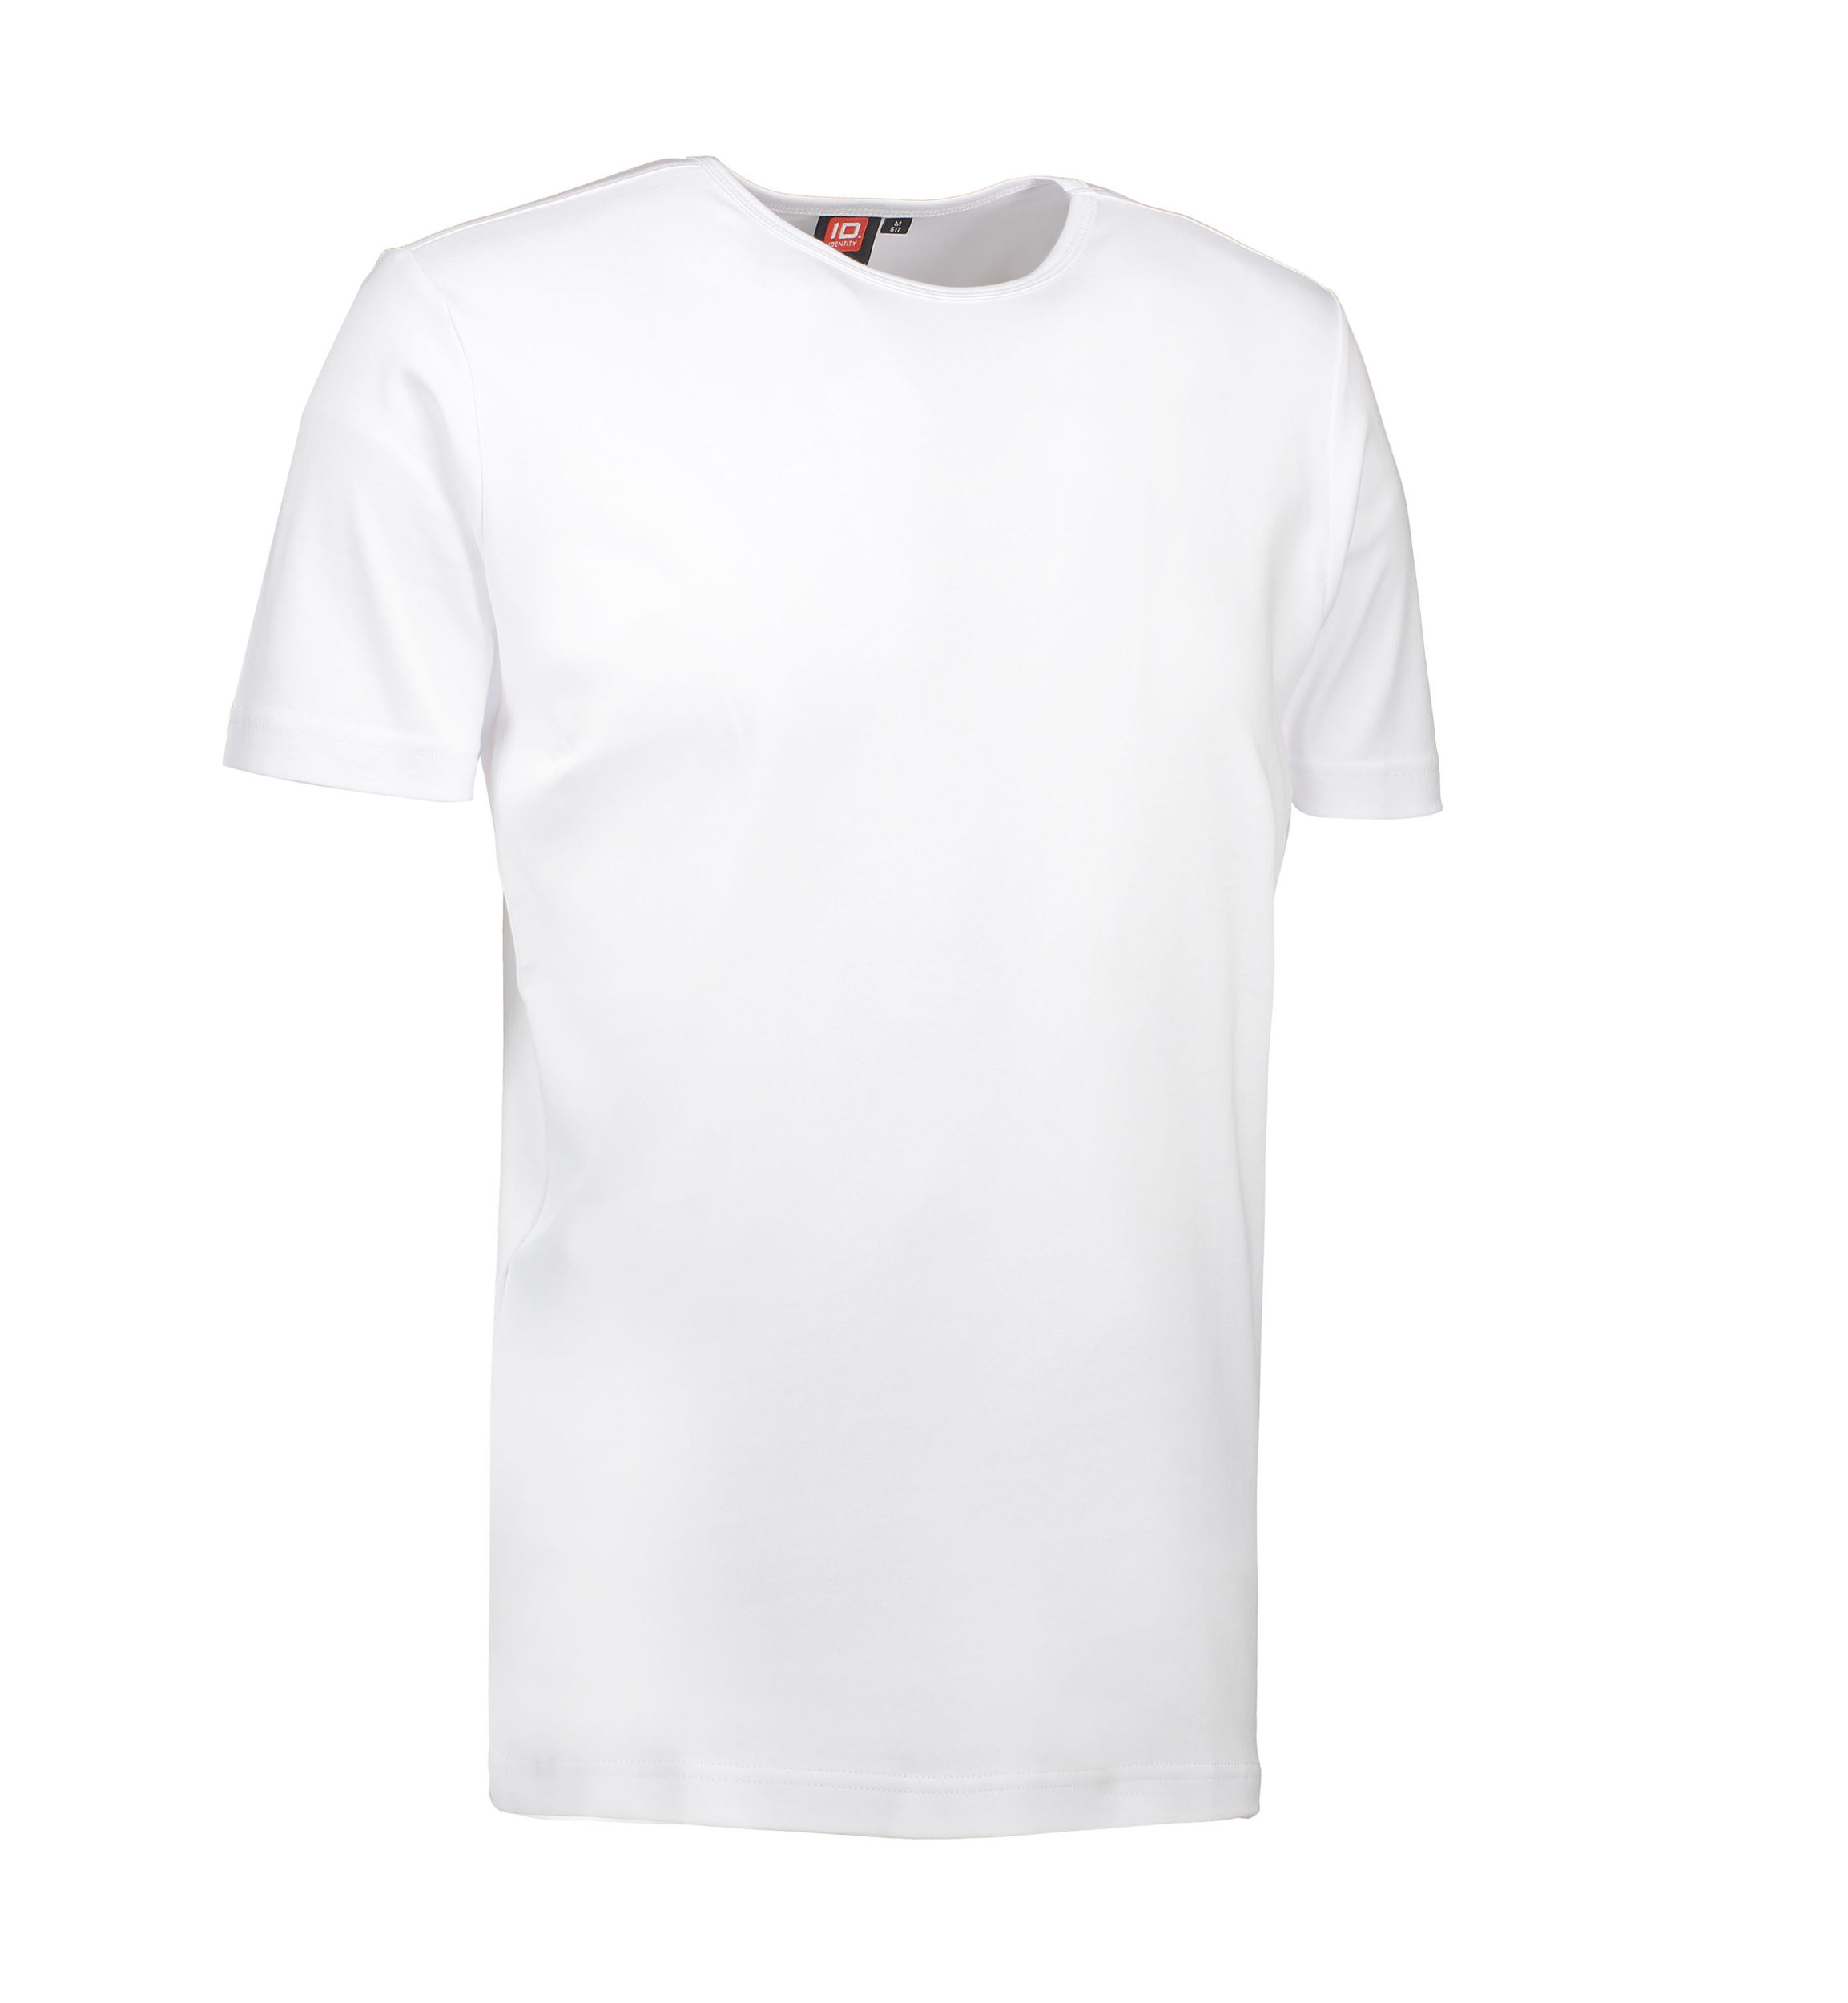 Billede af Hvid t-shirt med rund hals til mænd - L hos Sygeplejebutikken.dk